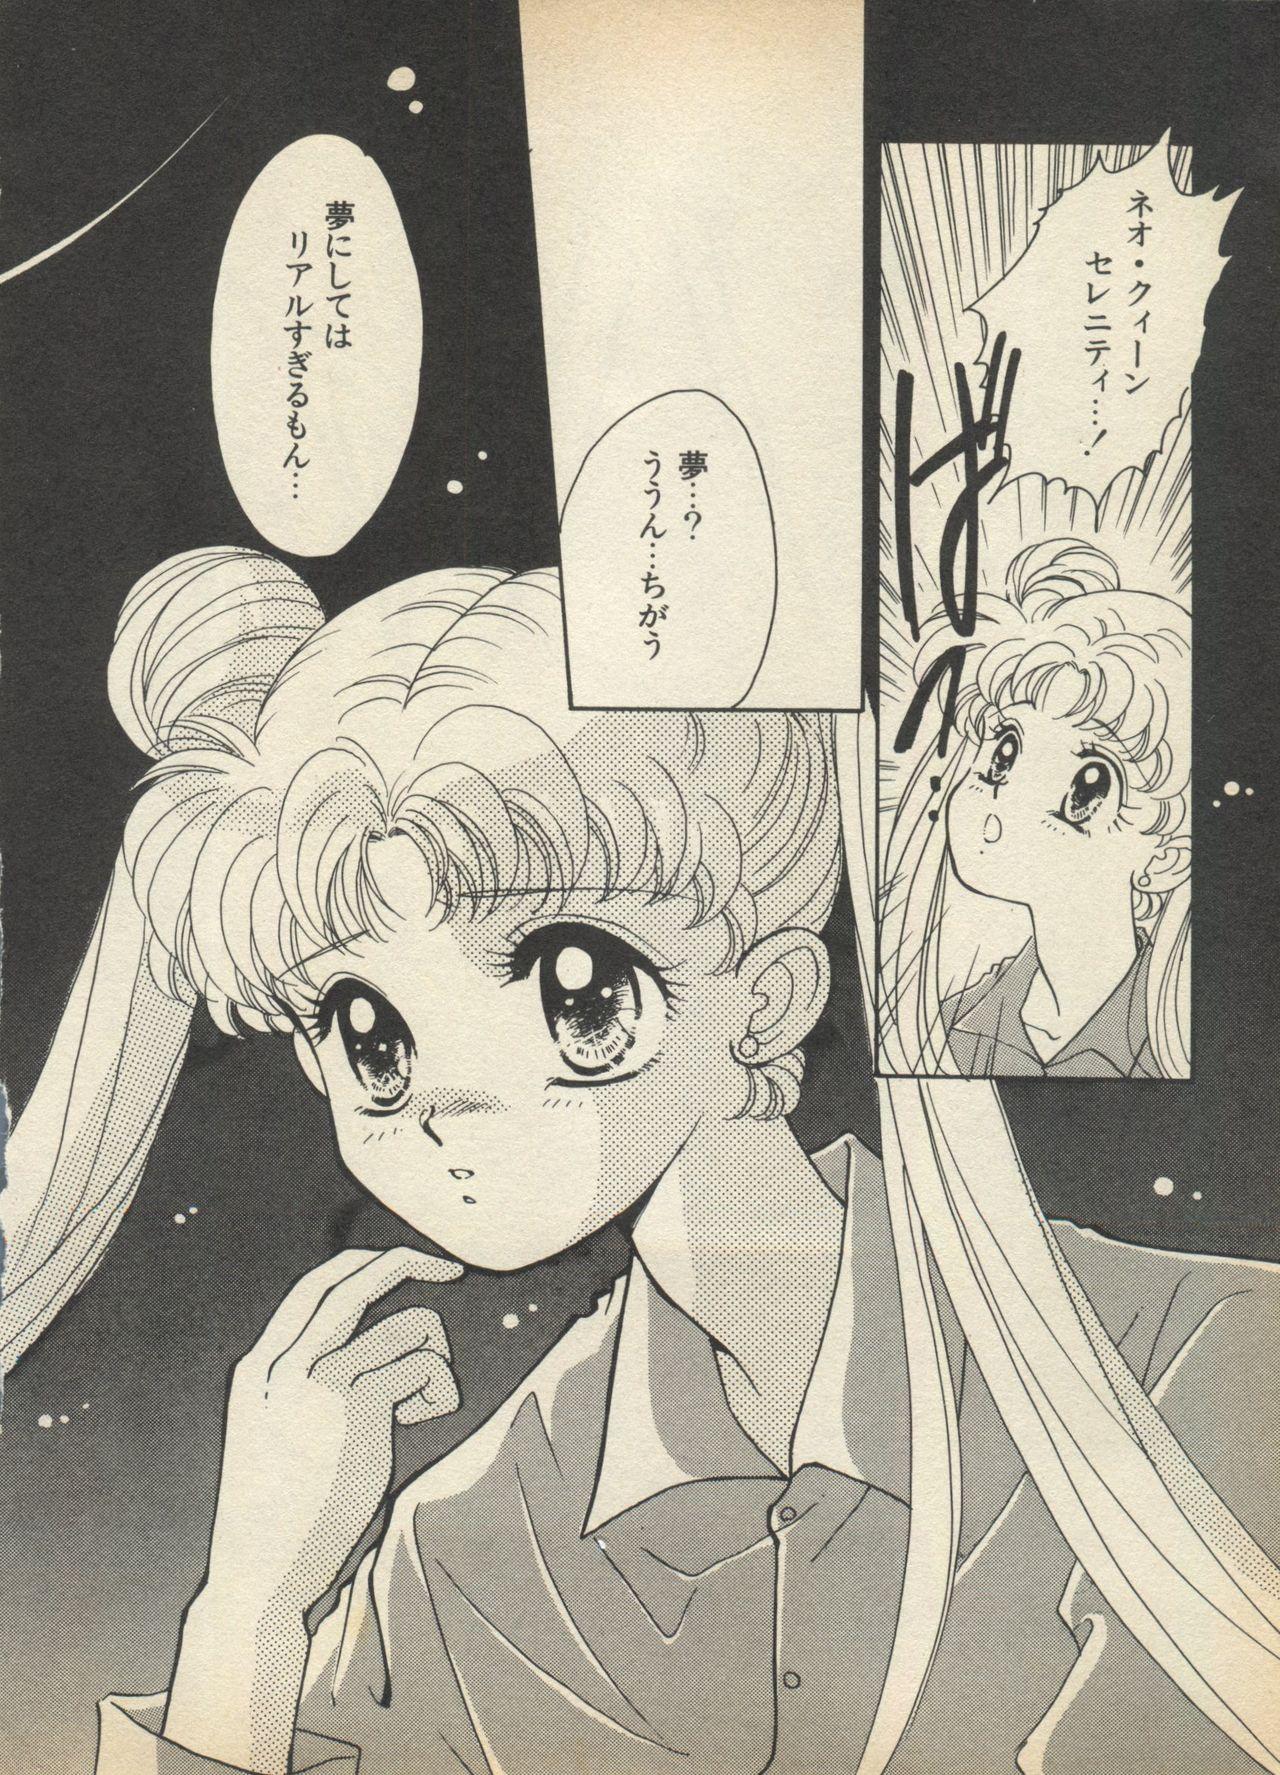 Crossdresser Lunatic Party 5 - Sailor moon Cocksucking - Page 13